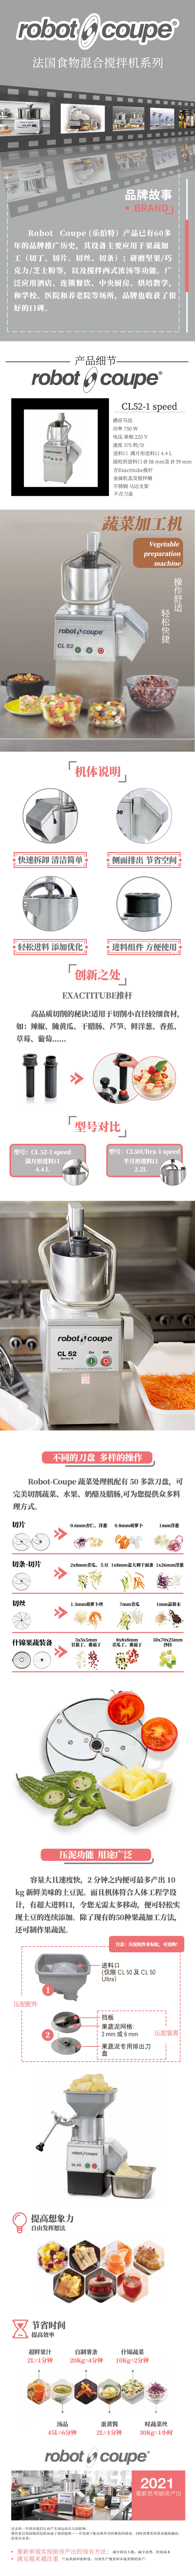 法国Robot-Coupe蔬菜加工机 CL52-1 Speed